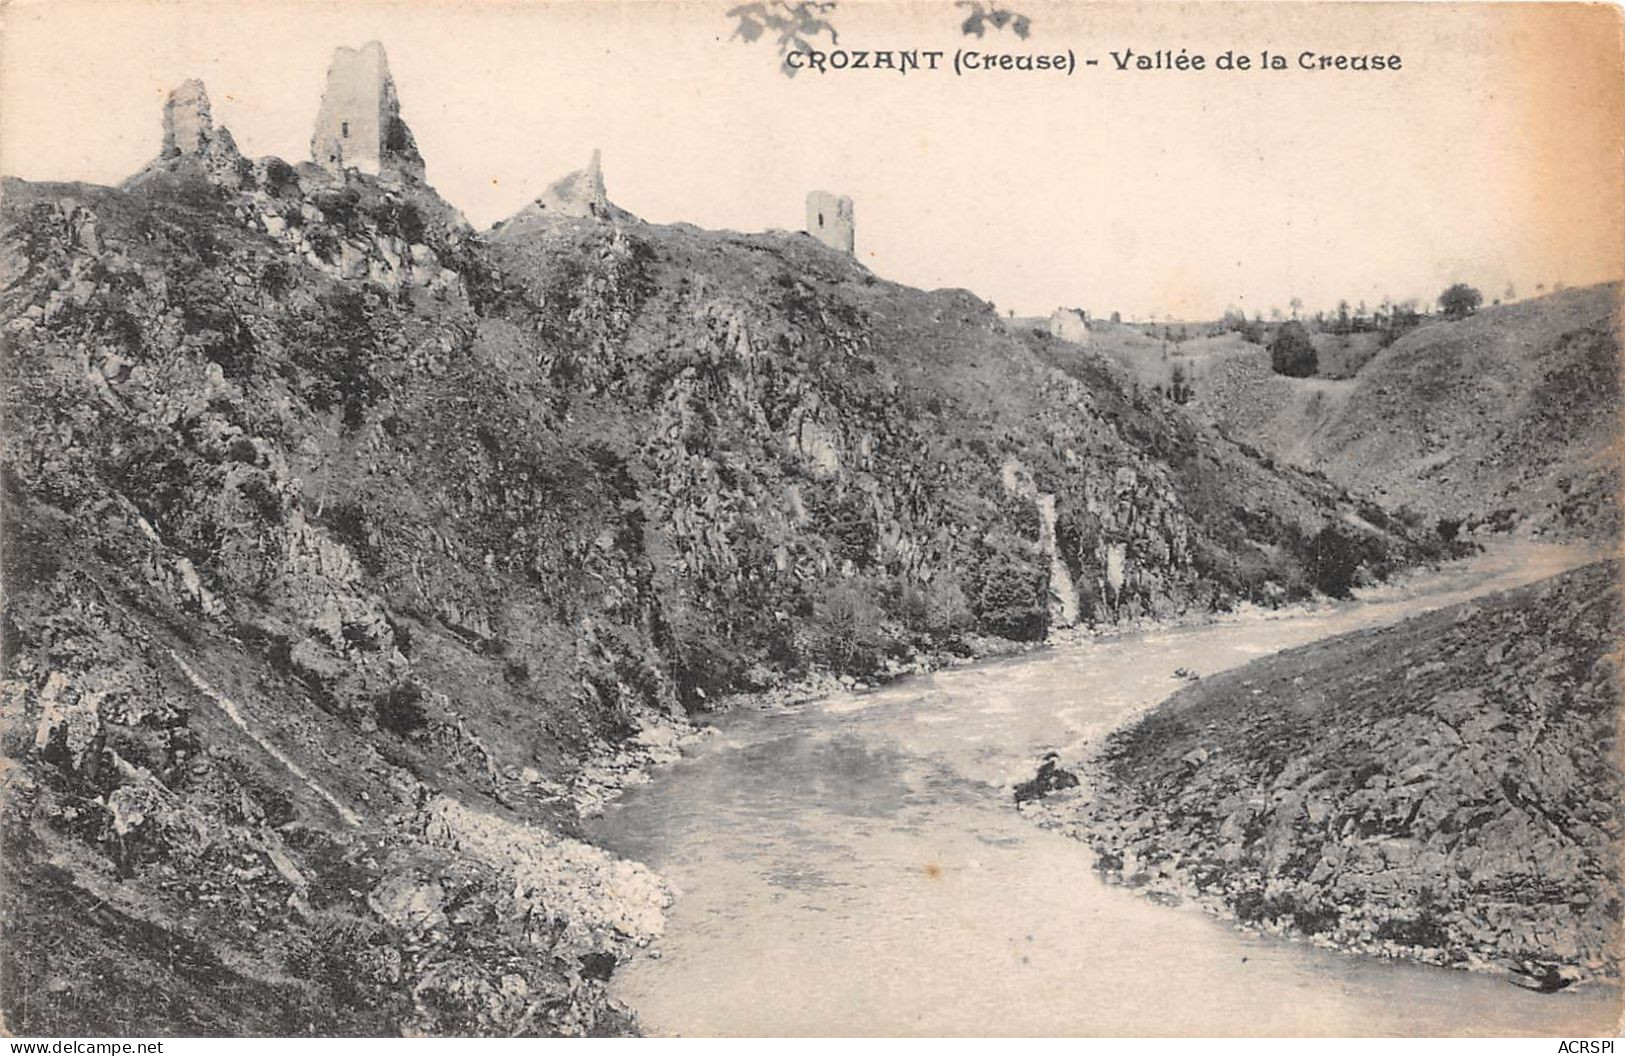 Crozant Creuse Vallee De La Creuse (SCAN RECTO VERSO) NONO0056 - Crozant